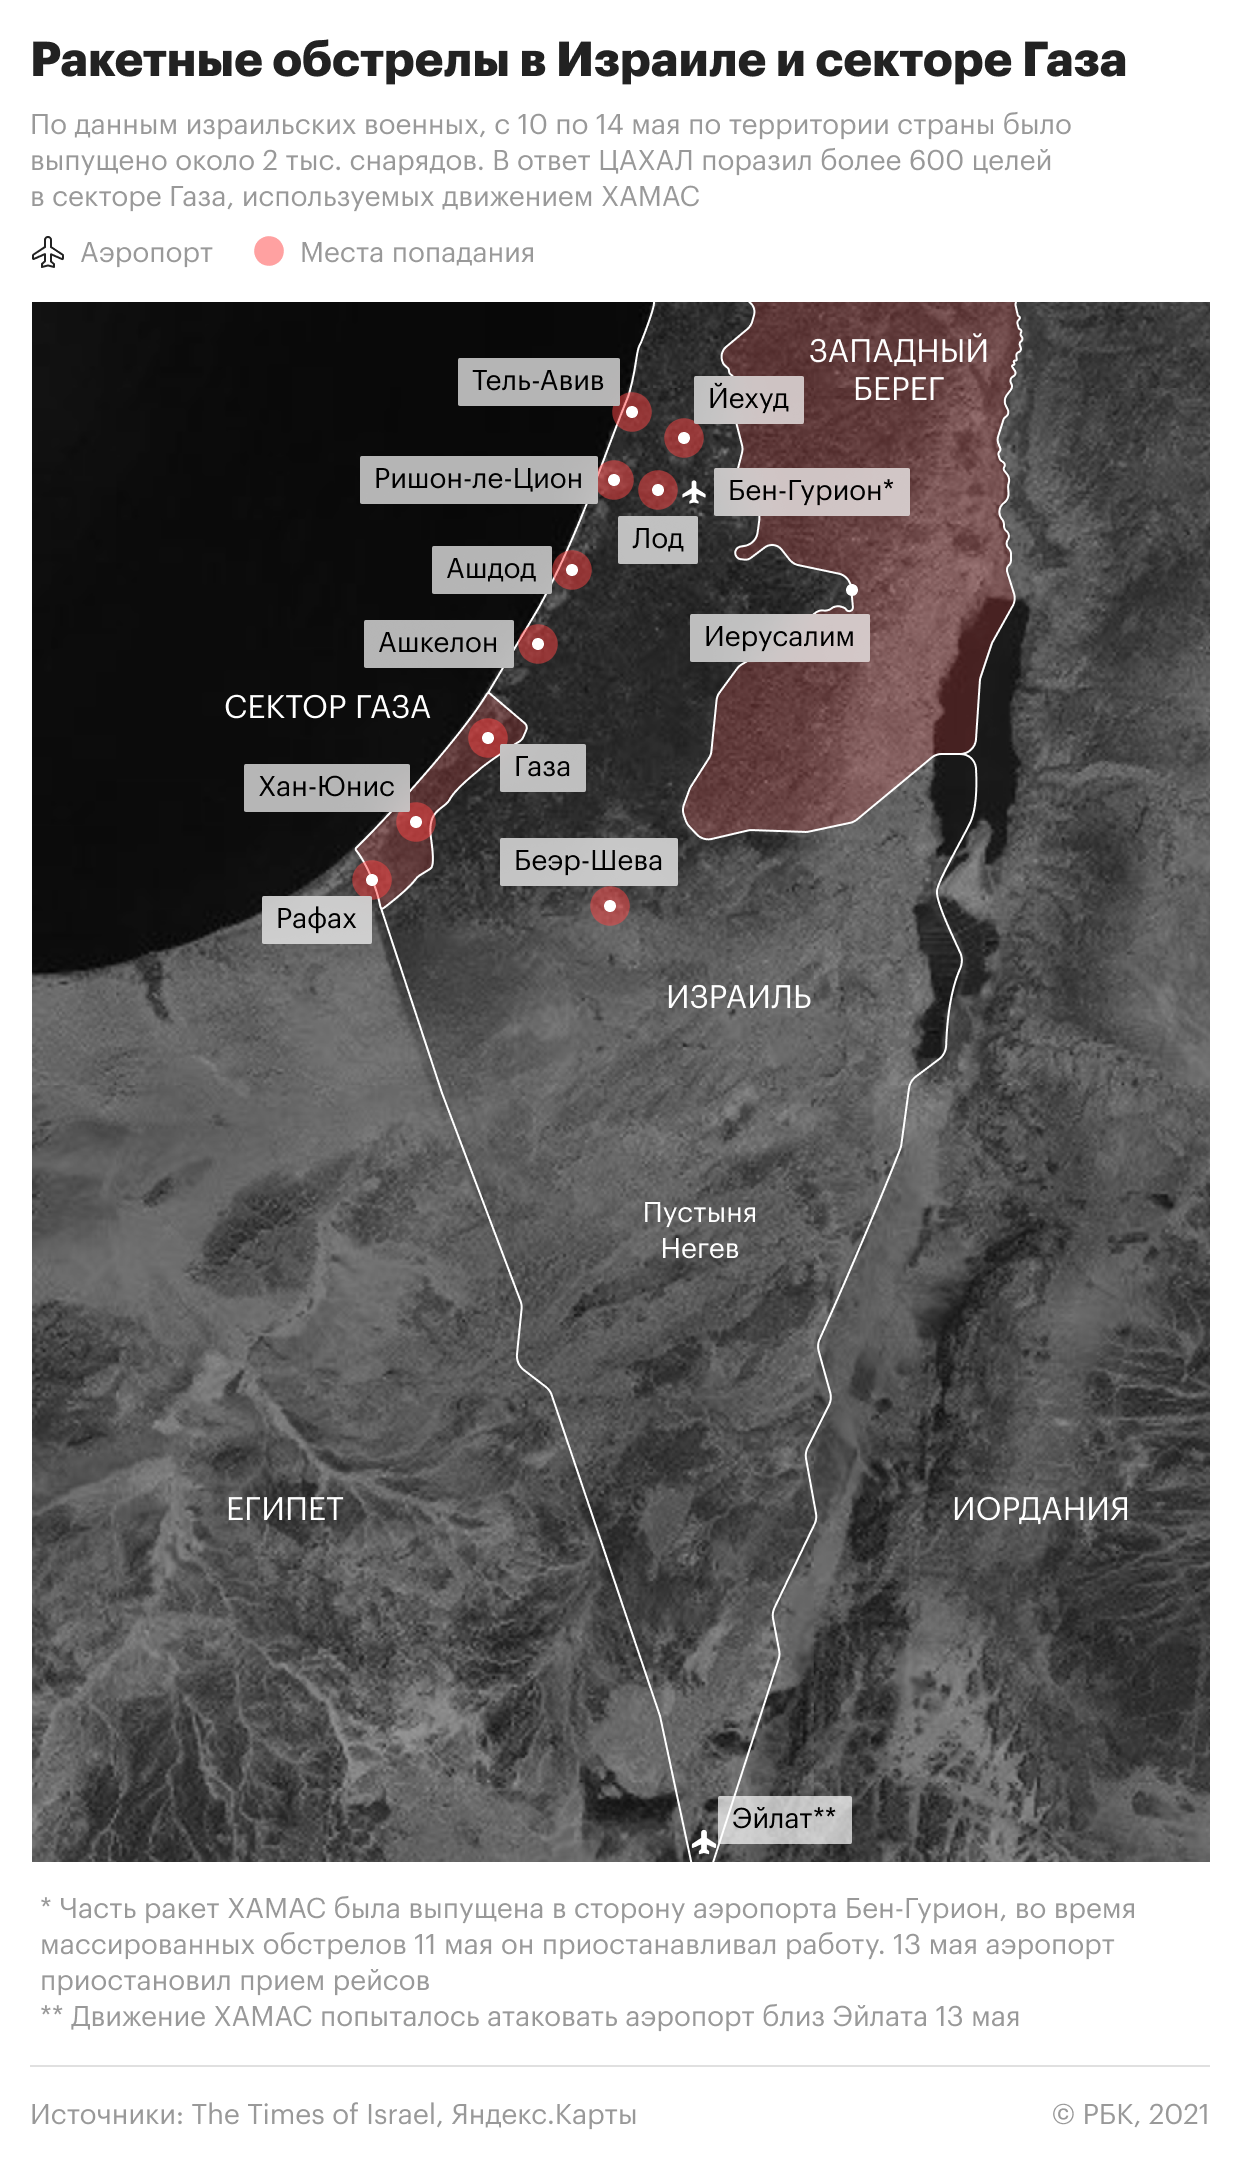 Ракетные обстрелы в Израиле и секторе Газа. Карта